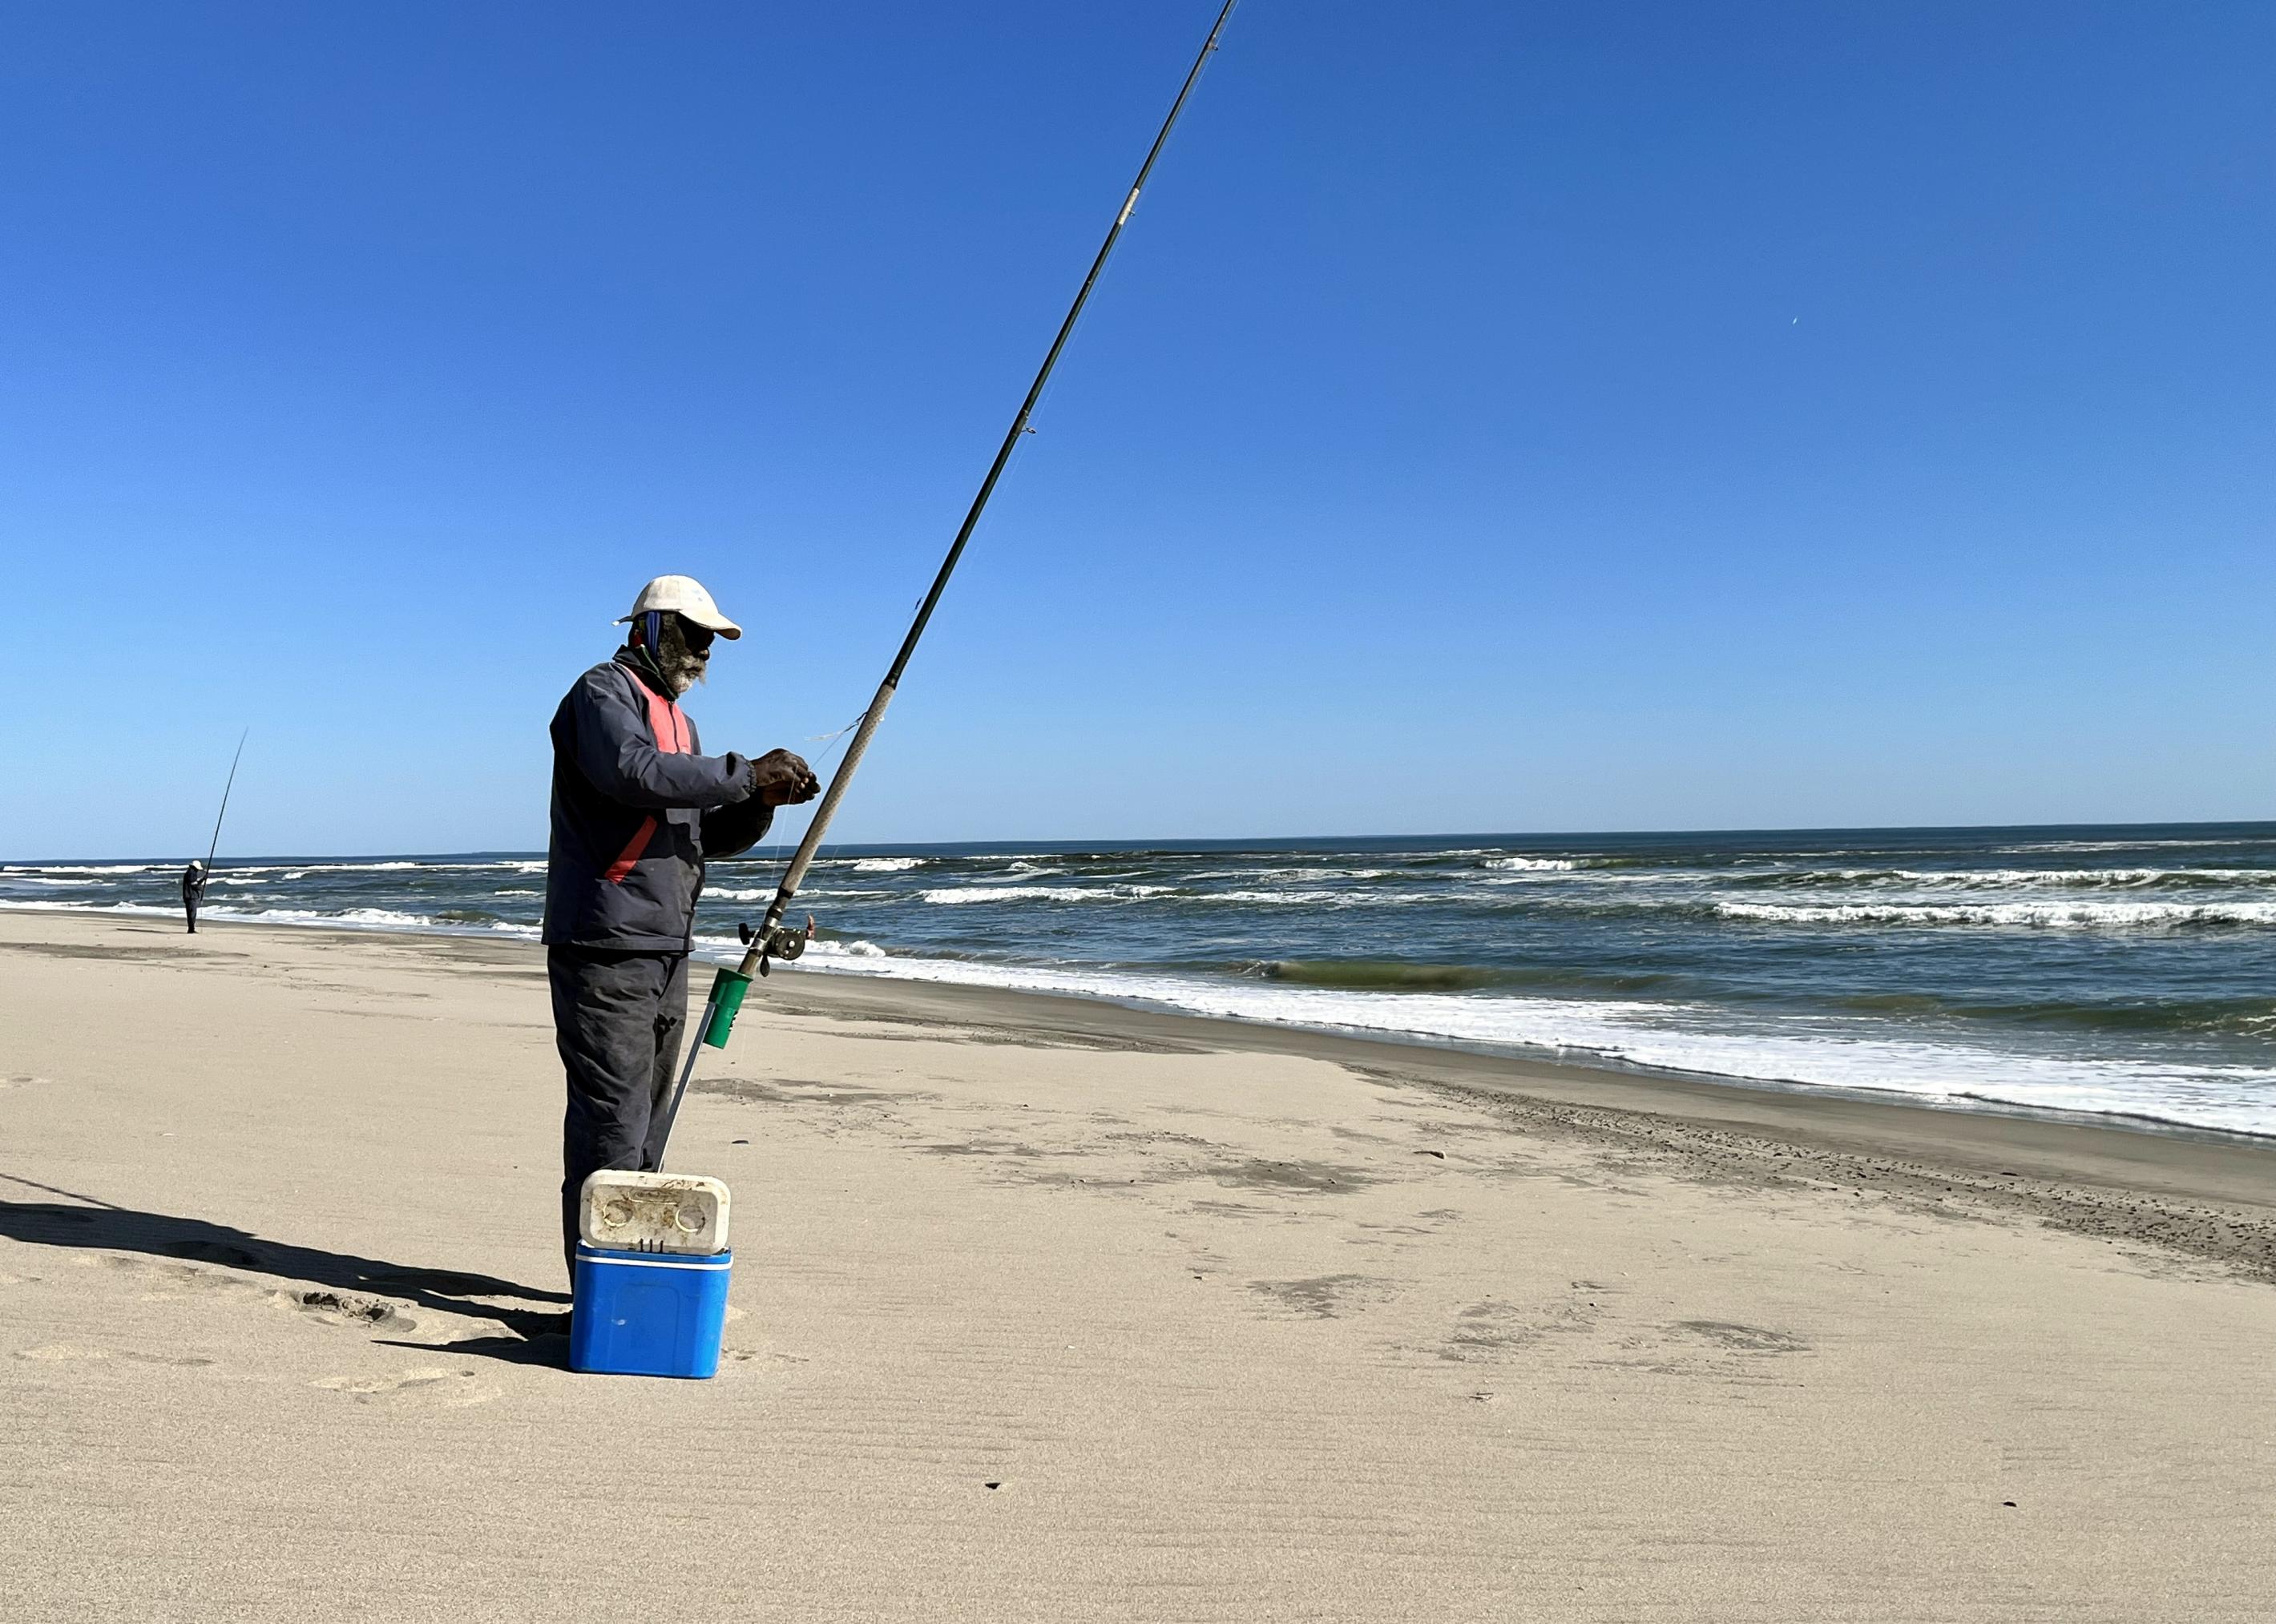 Der Fischer steht neben Angel und Kühlbox am Strand, er trägt eine blaue Jacke und hat einen grauen Bart.